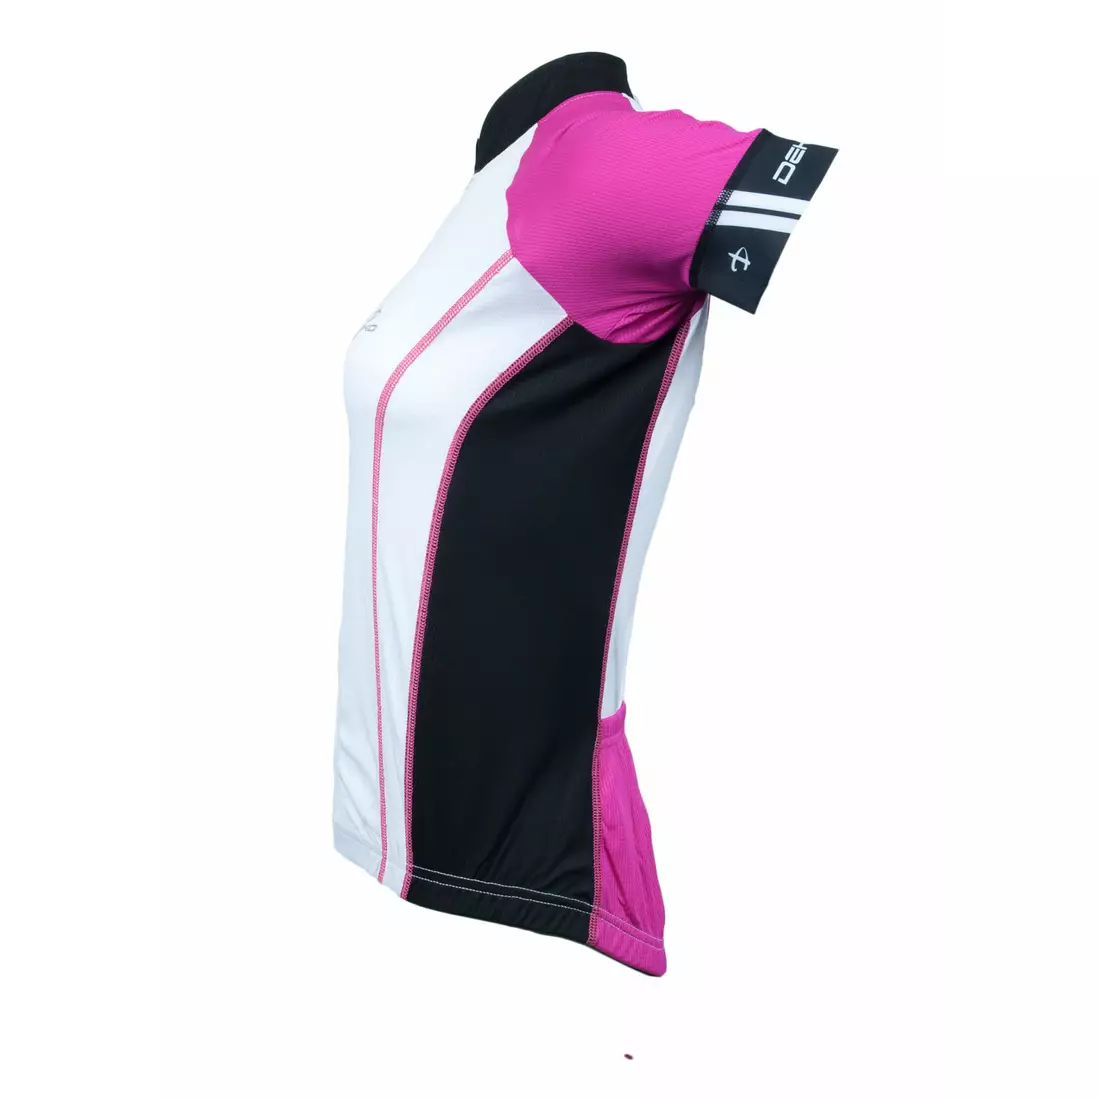 DEKO ASPIDE női kerékpáros szett: mez + rövidnadrág, nadrágtartó, fekete-rózsaszín